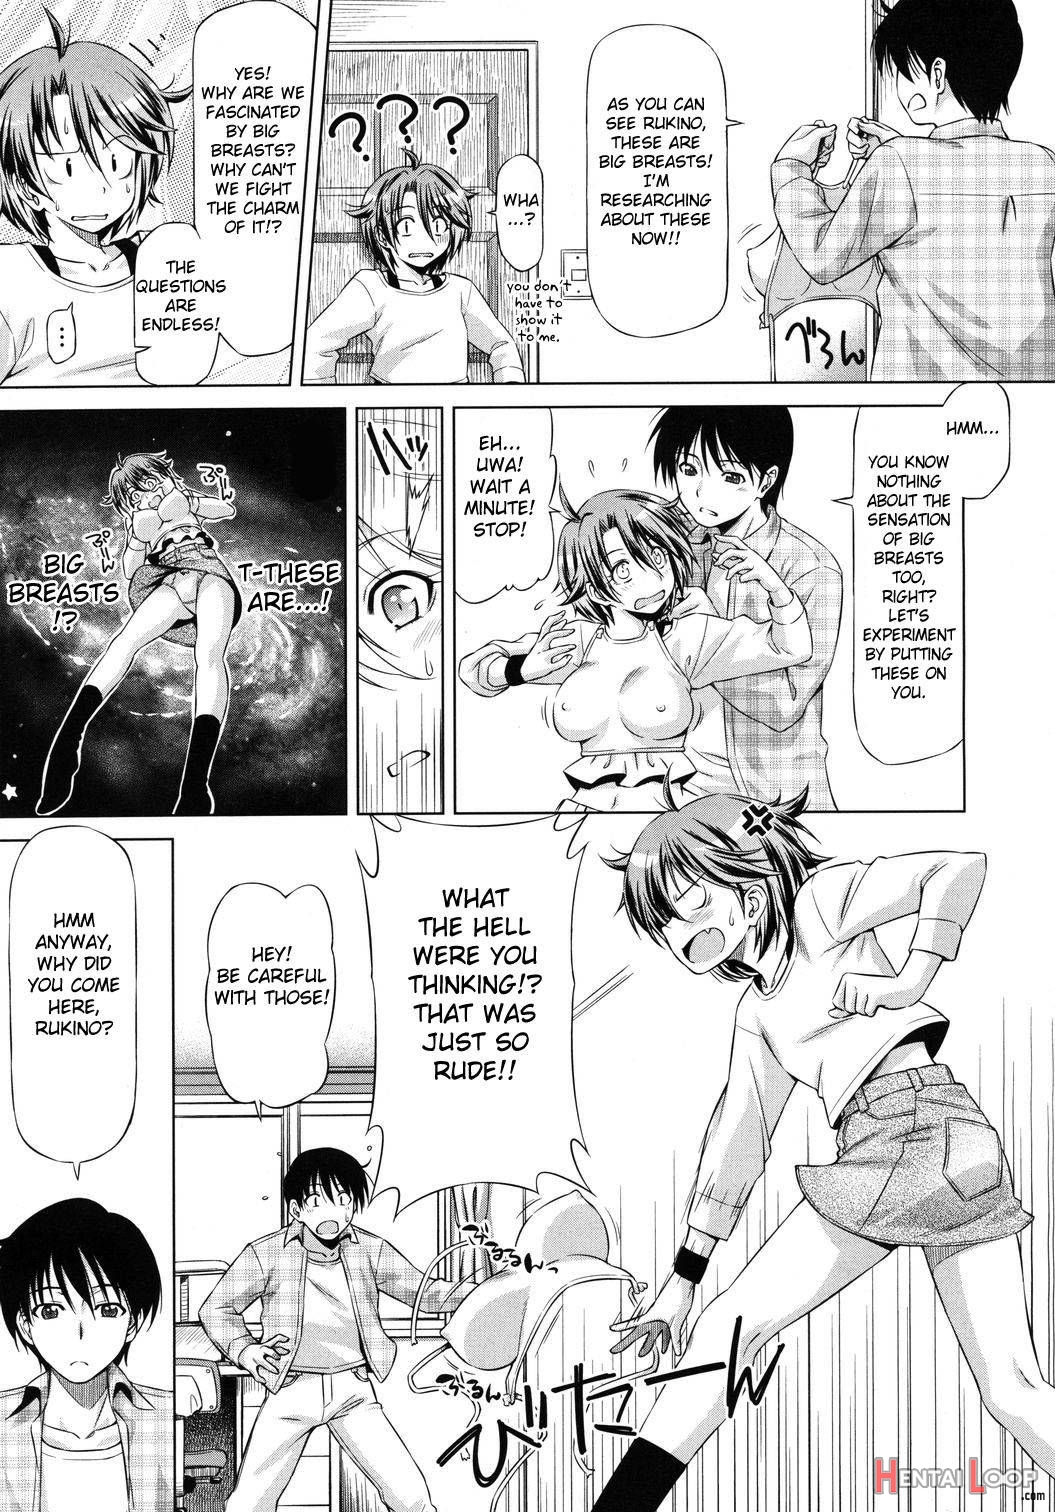 Rukino Versus Kei-niichan page 3